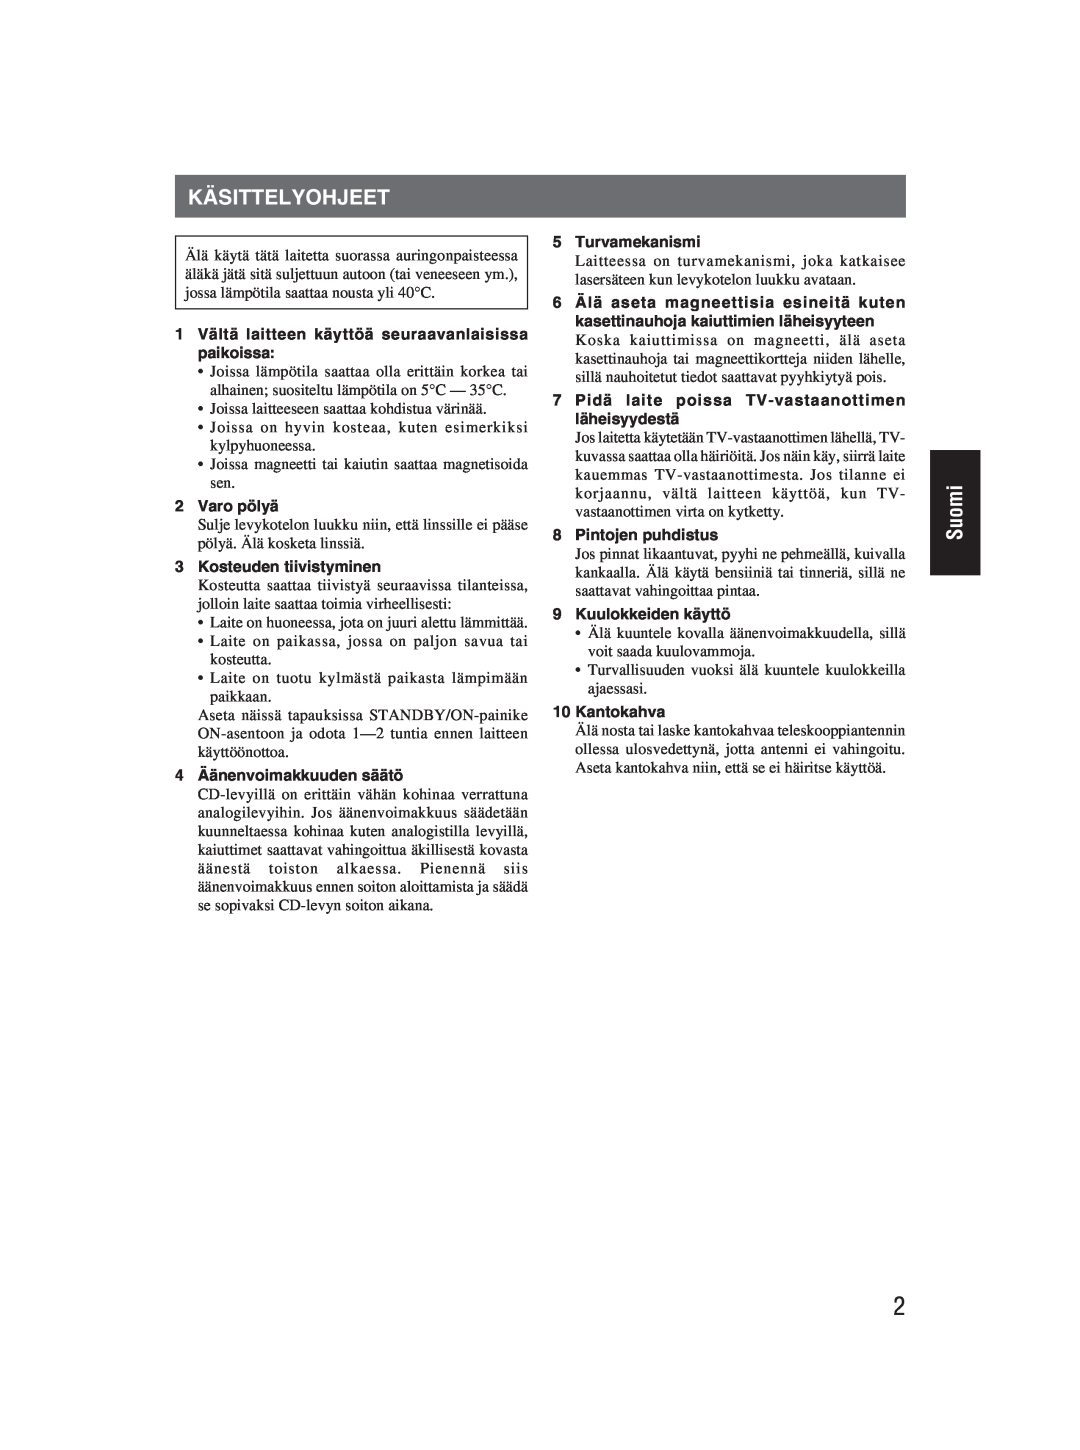 JVC RC-EX25S manual Käsittelyohjeet, Suomi, 1 Vältä laitteen käyttöä seuraavanlaisissa paikoissa 